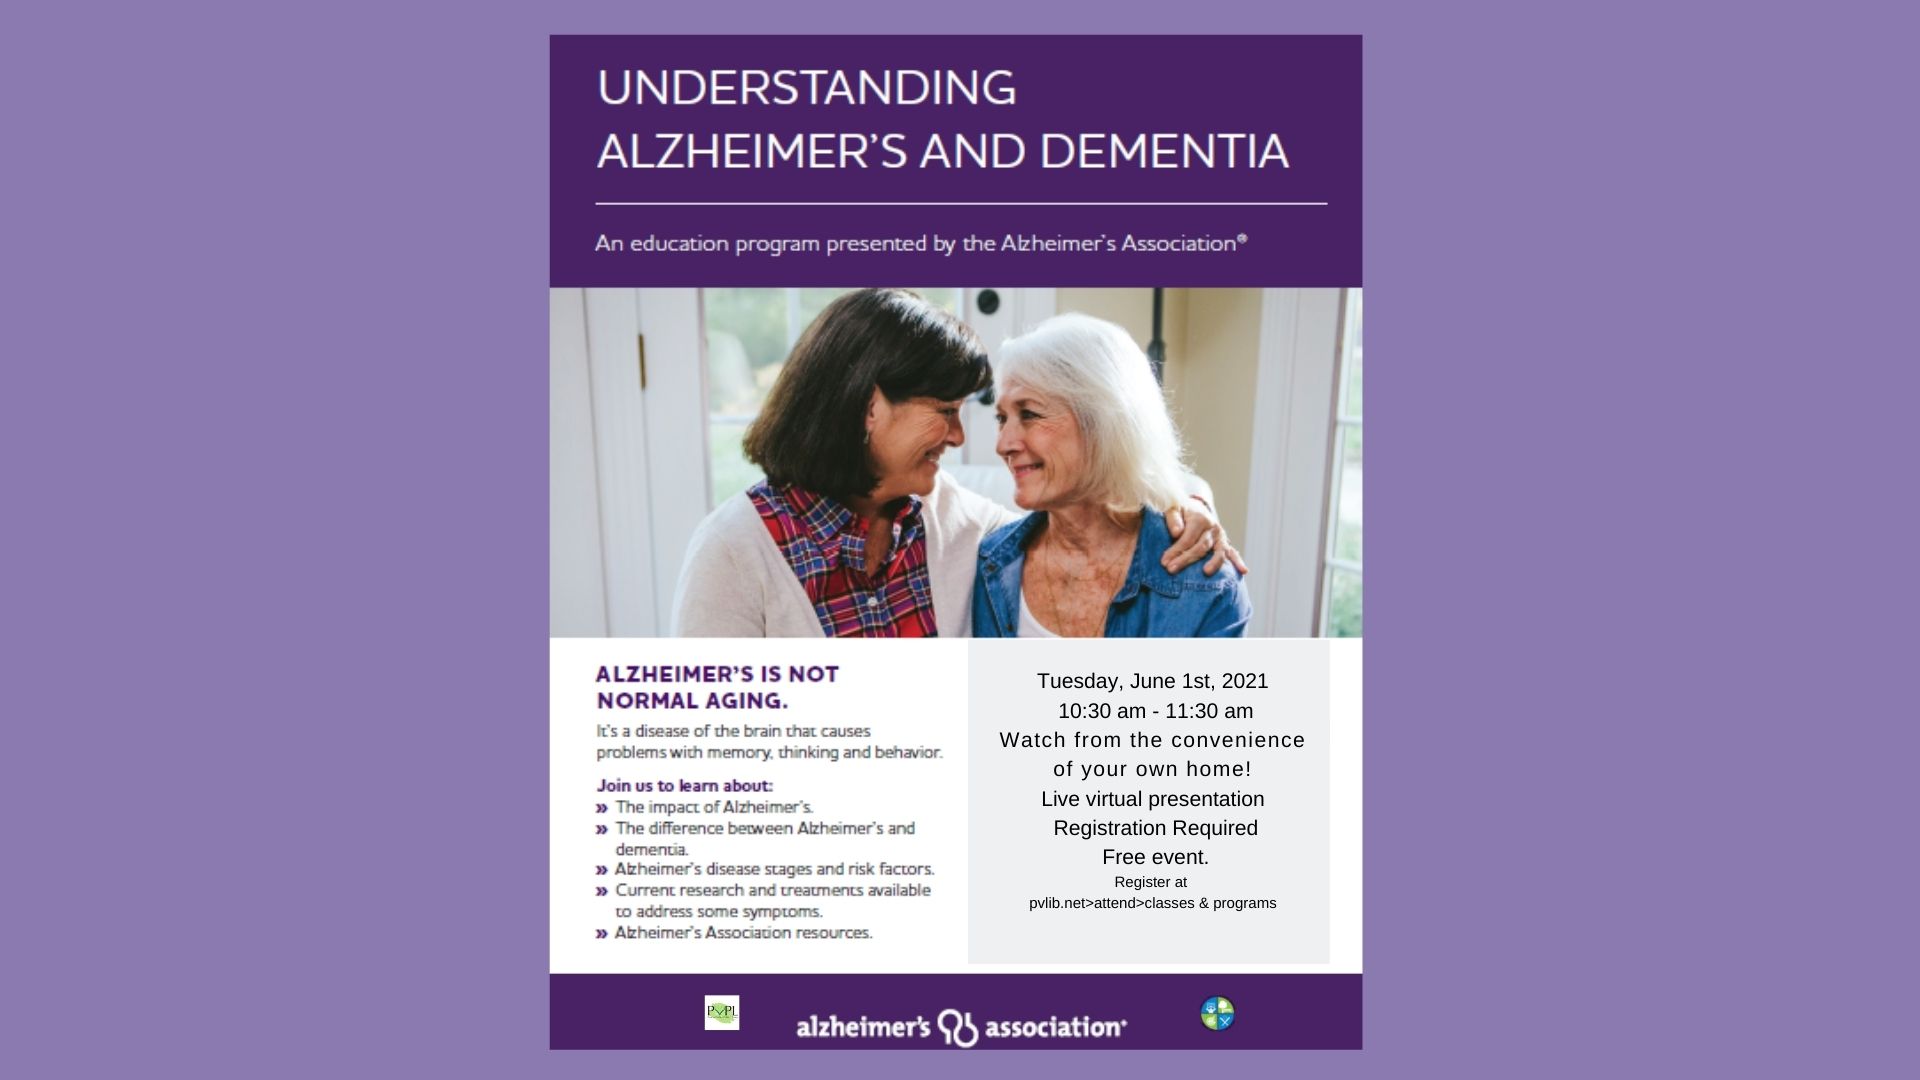 Alzheimer’s Association: Understanding Alzheimer’s Disease and Dementia